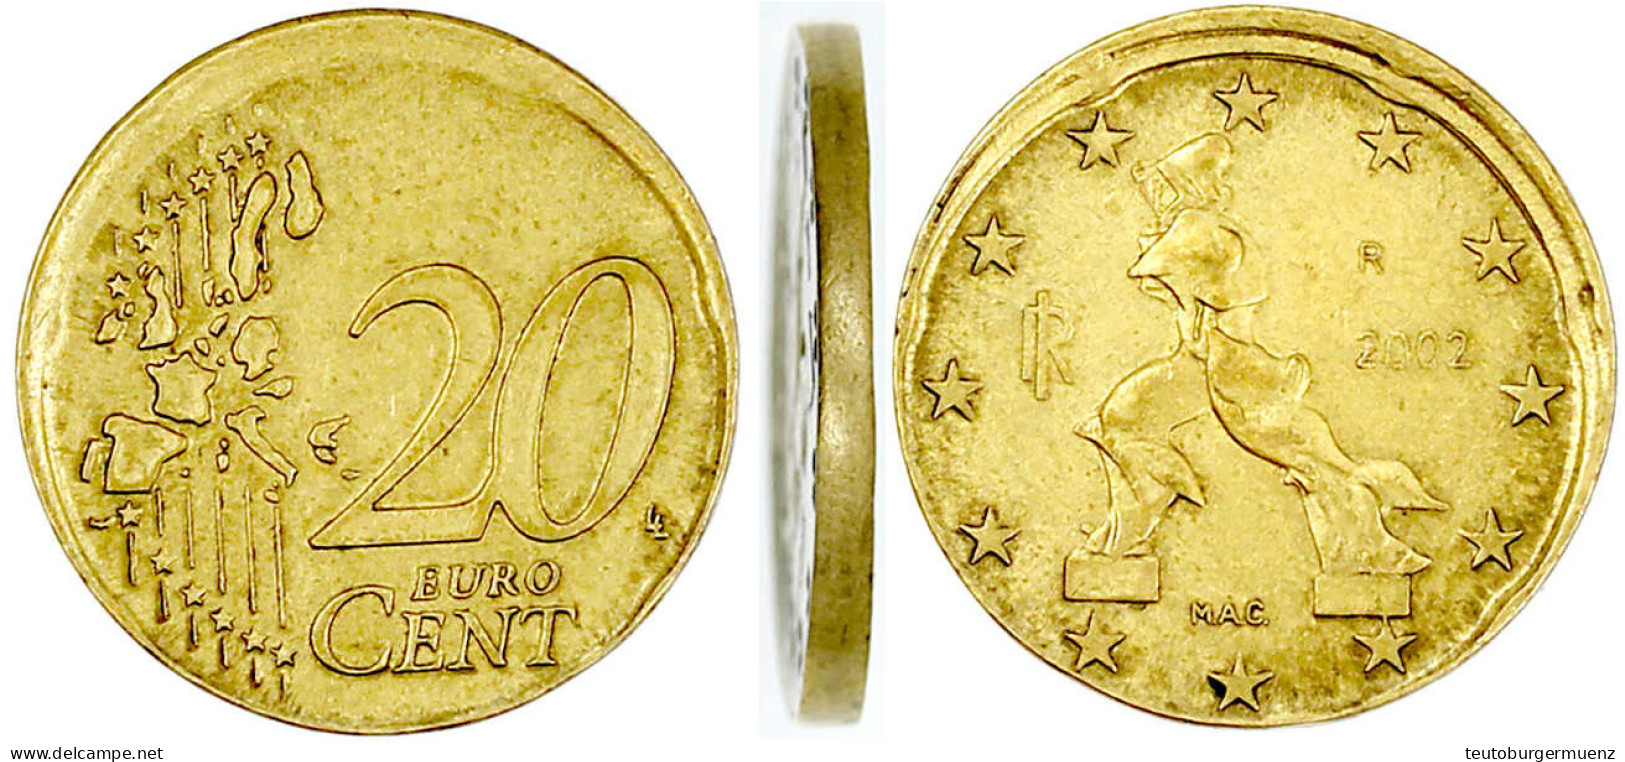 Frankreich 20 Euro-Cent 2002 Ohne Randprägung Und Etwas Dezentriert (vermutlich Aus Prägeform Gesprungen). Vorzüglich, S - Germany